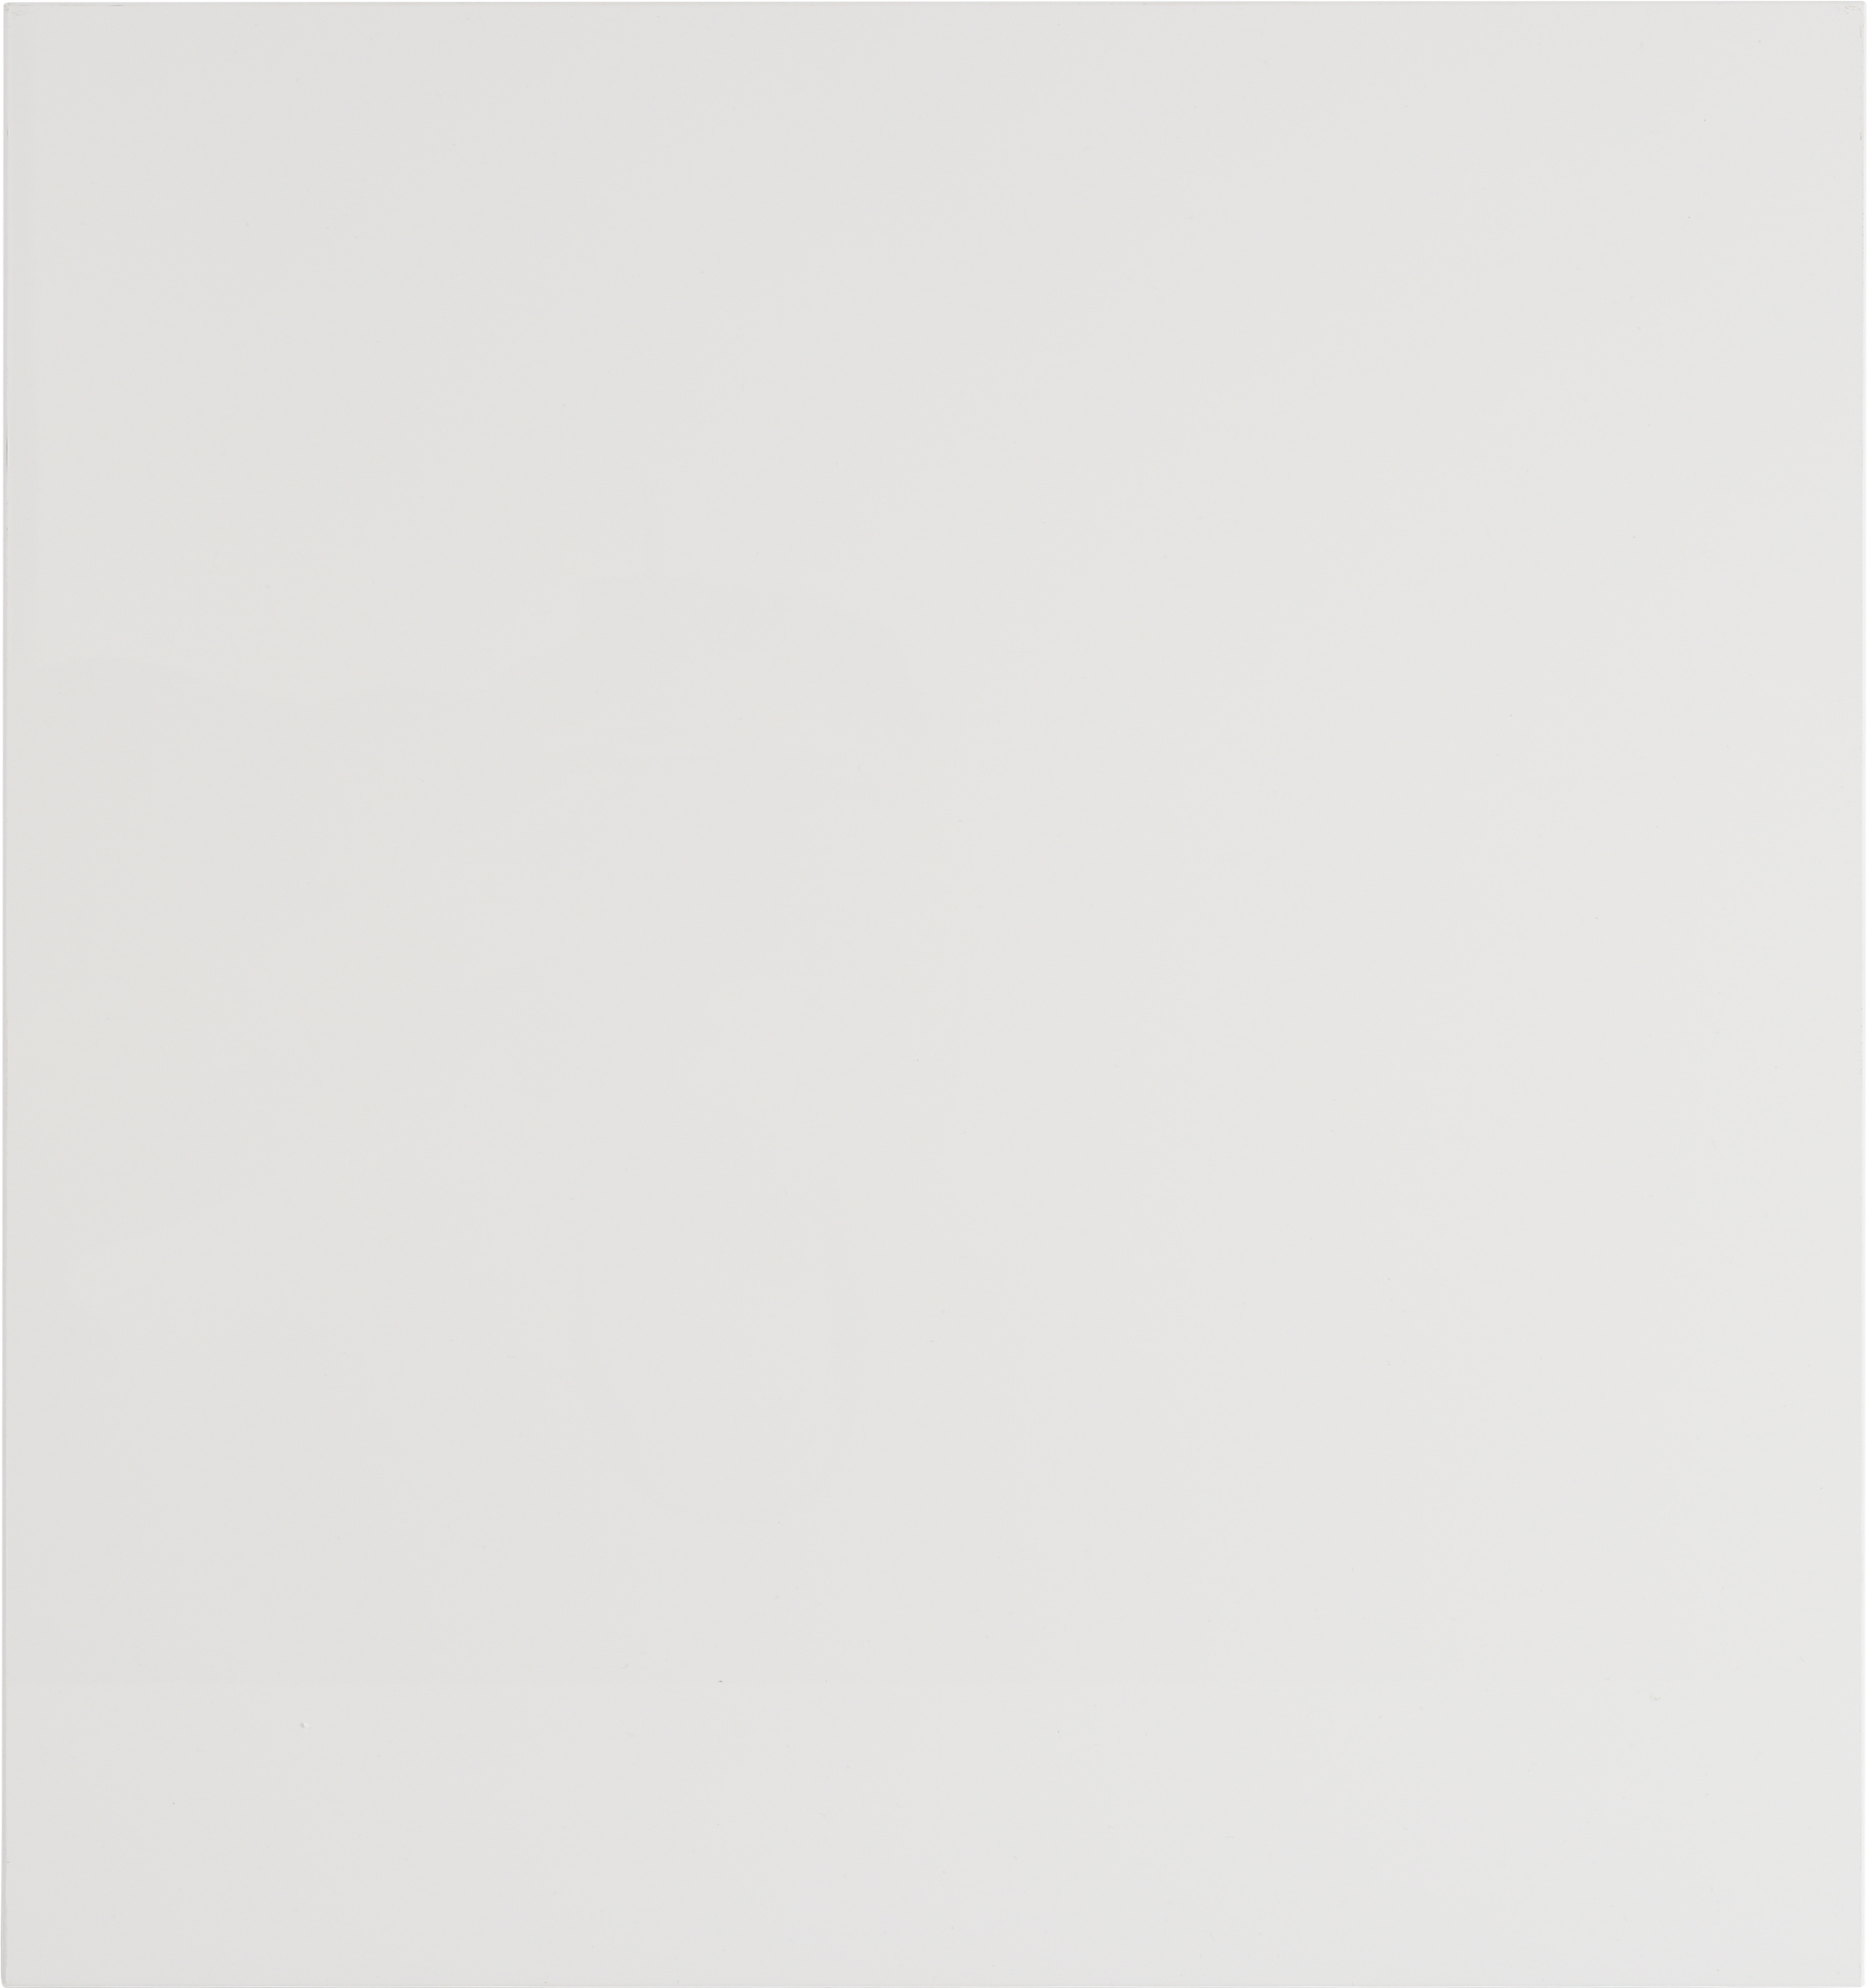 Puerta para mueble de cocina atenas blanco brillo h 64 x l 60 cm